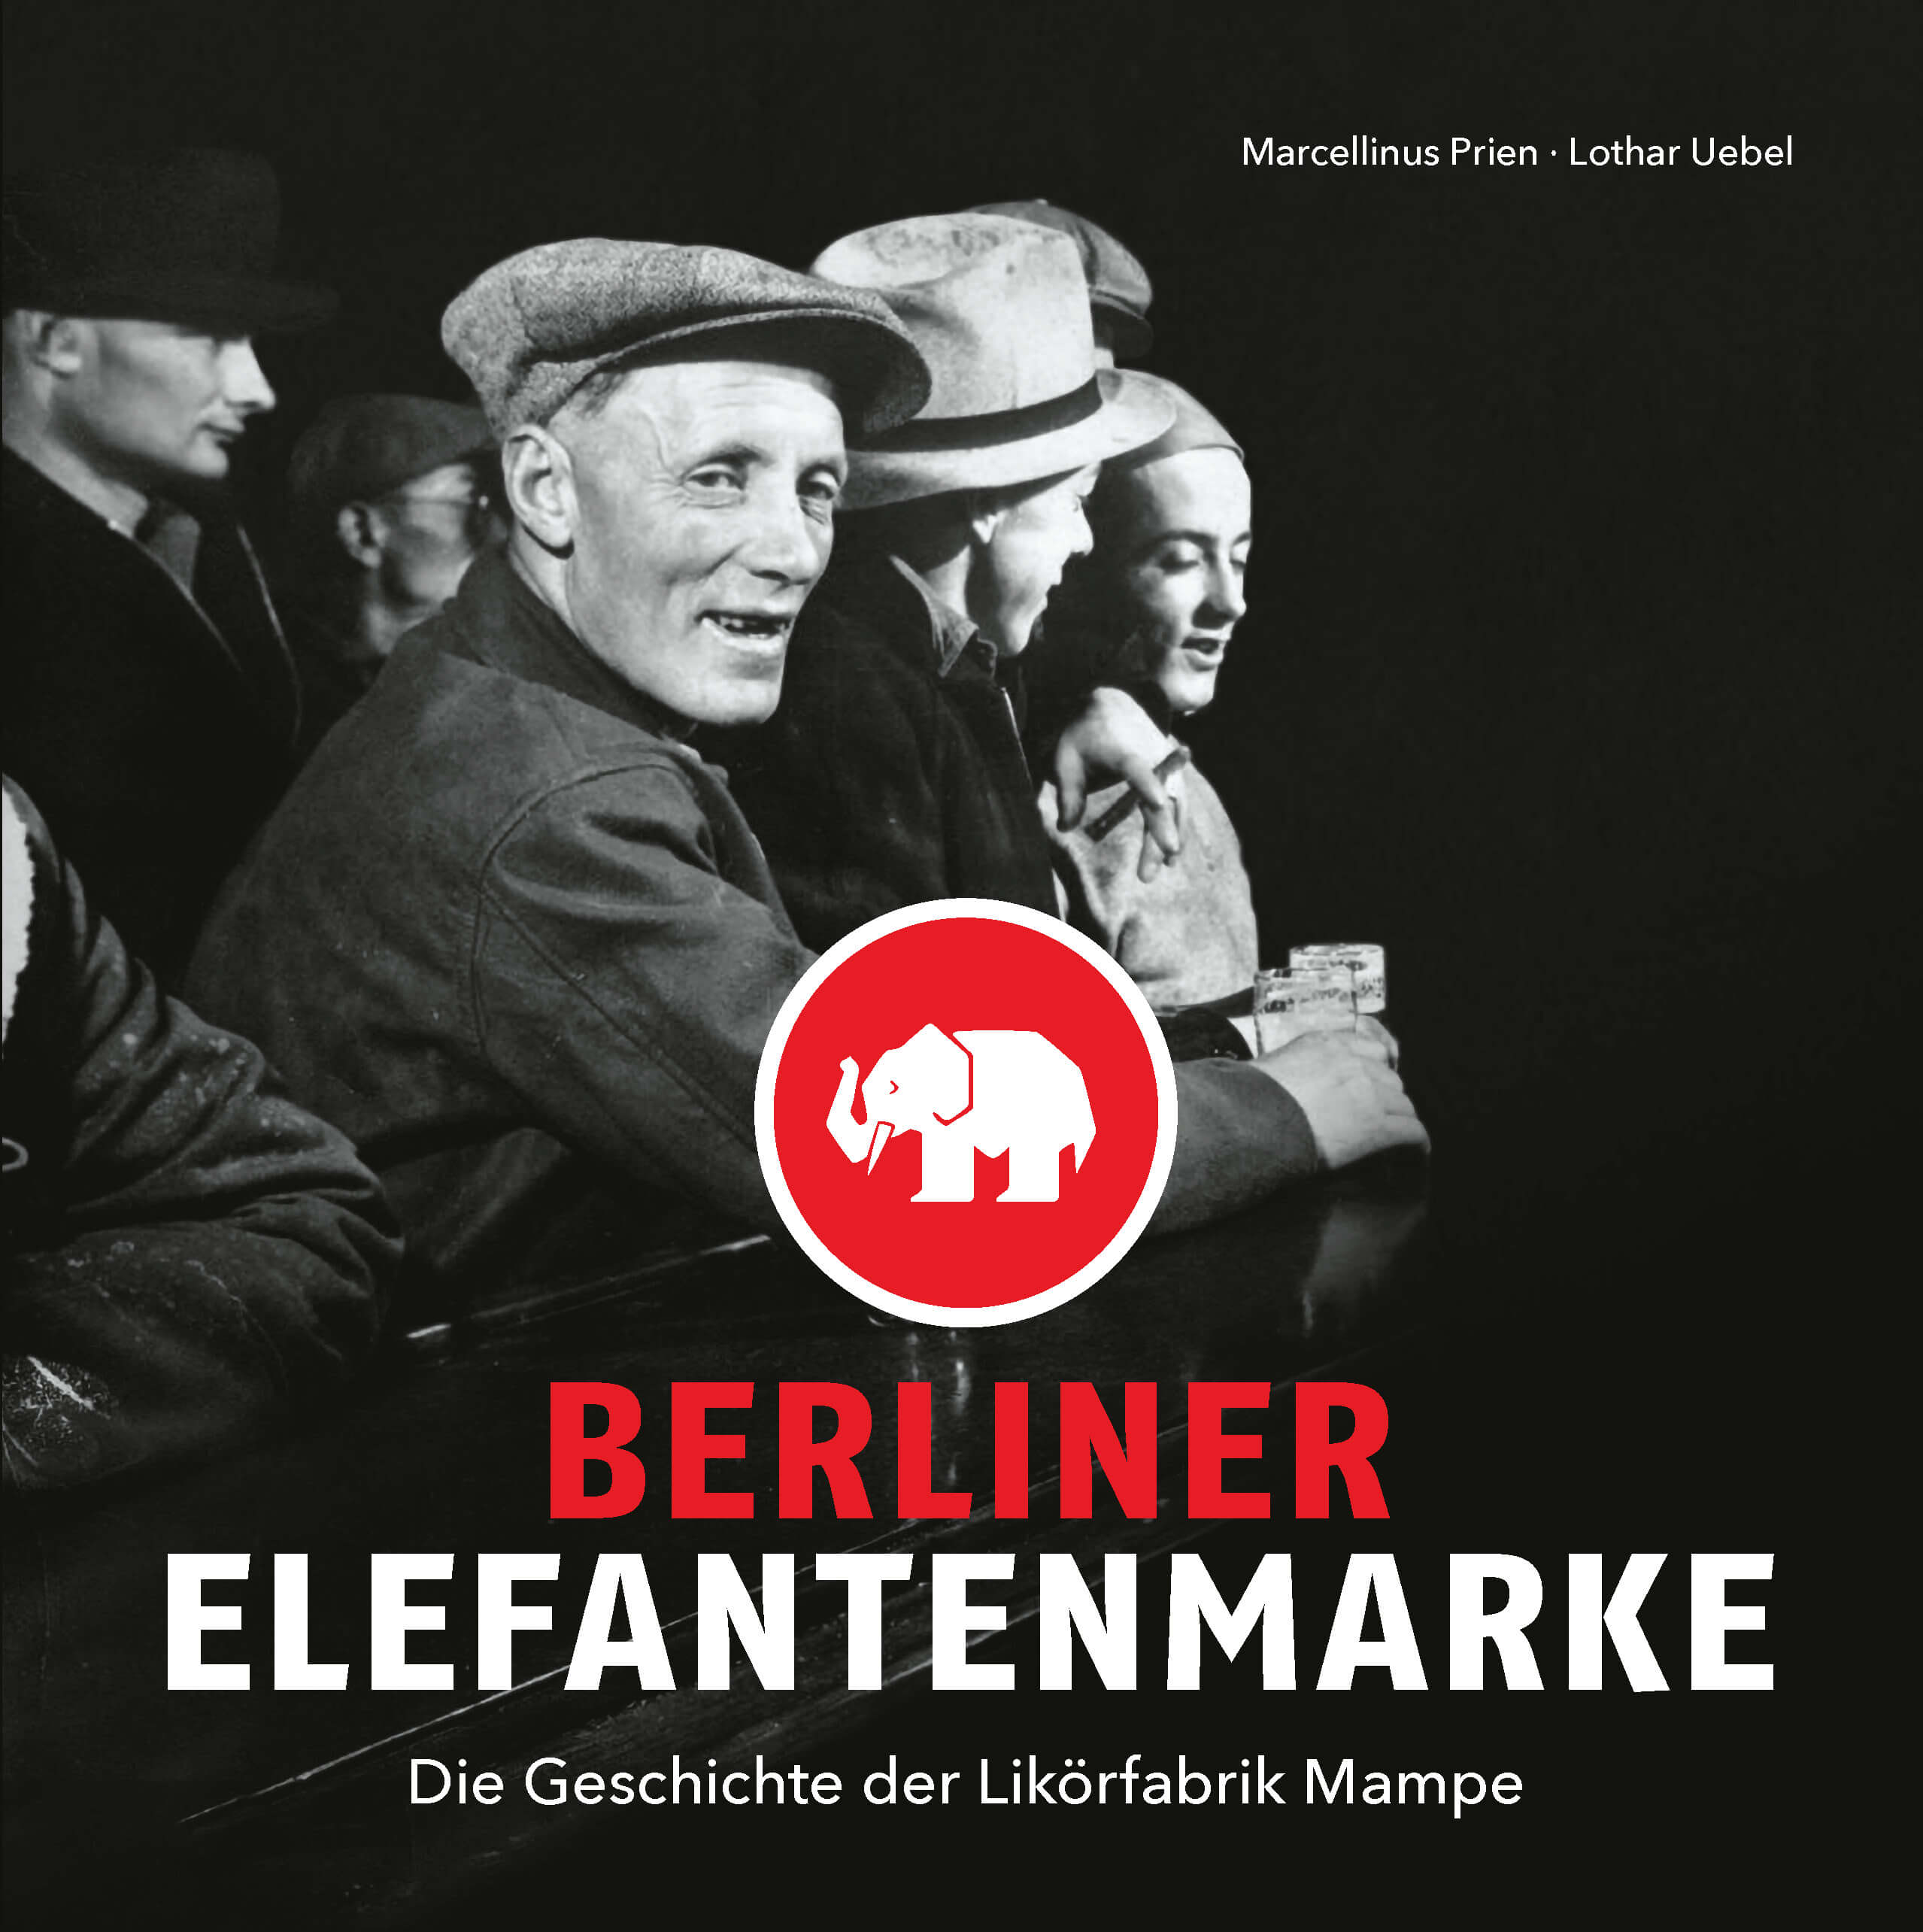 Das Mampe Buch - Berliner Elefantenmarke: Die Geschichte der Likörfabrik Mampe